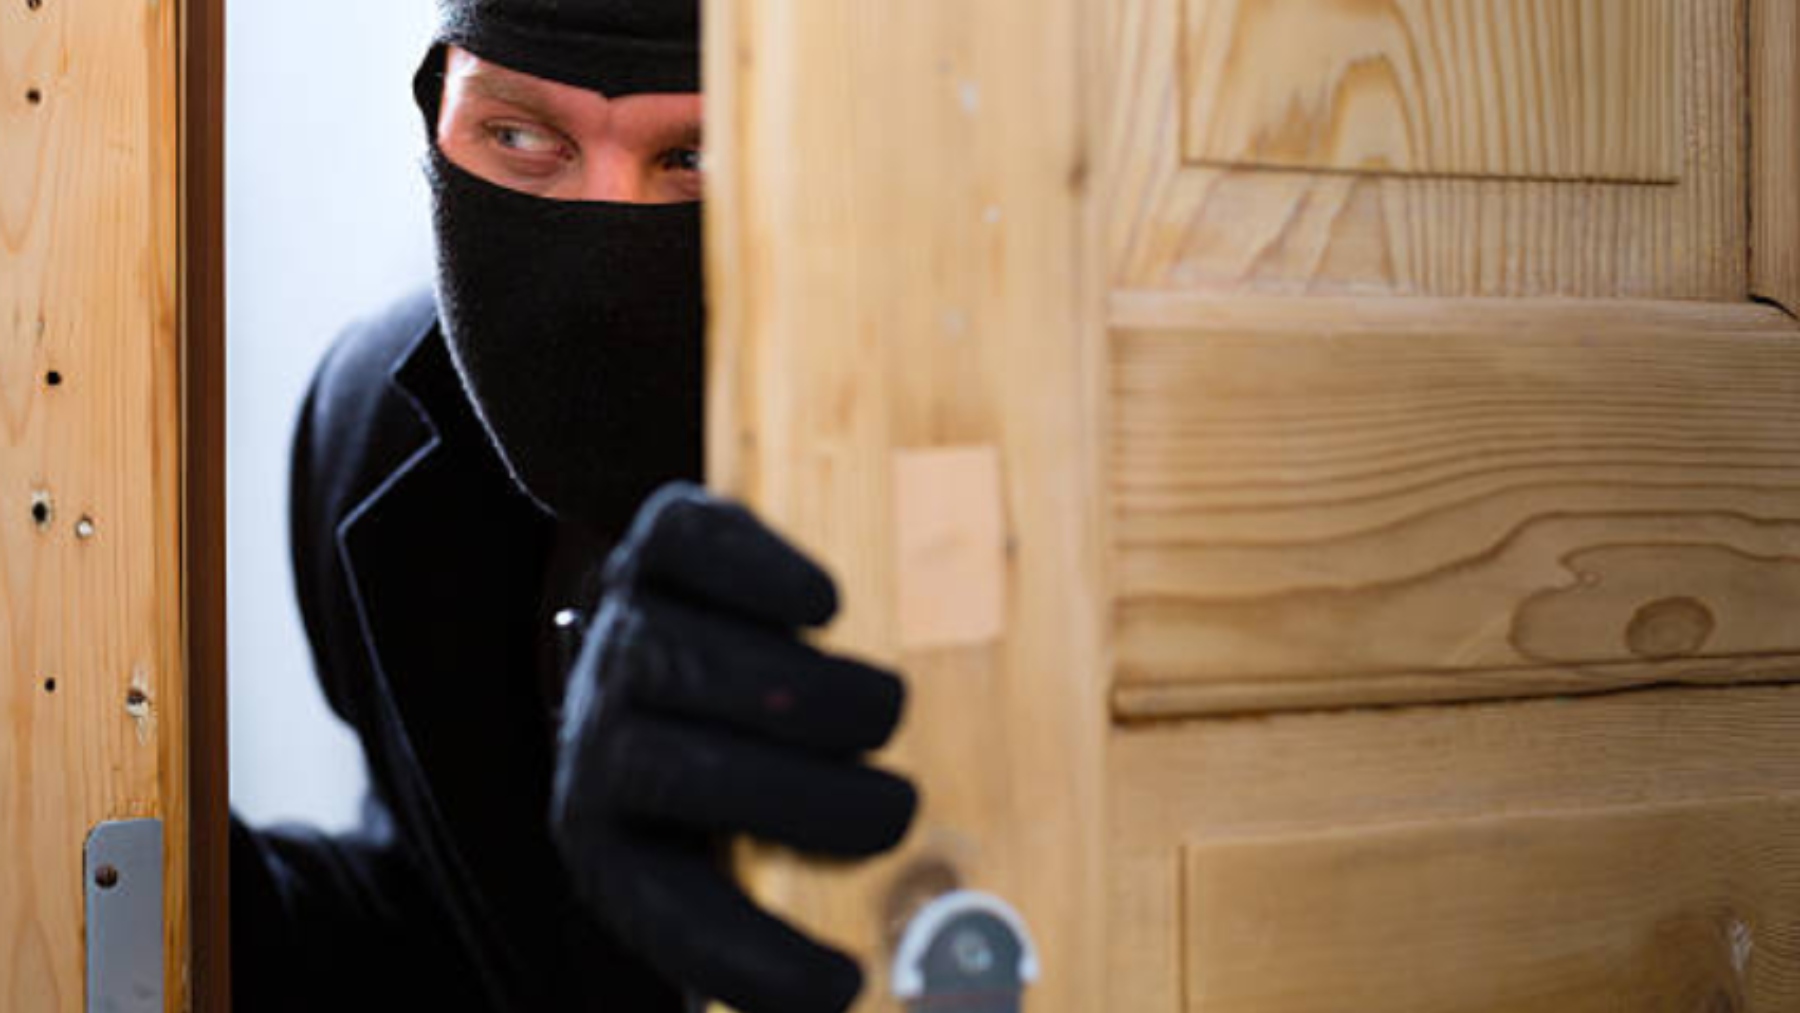 La Guardia Civil alerta: si te dicen esto y abres la puerta de tu casa corres un grave peligro